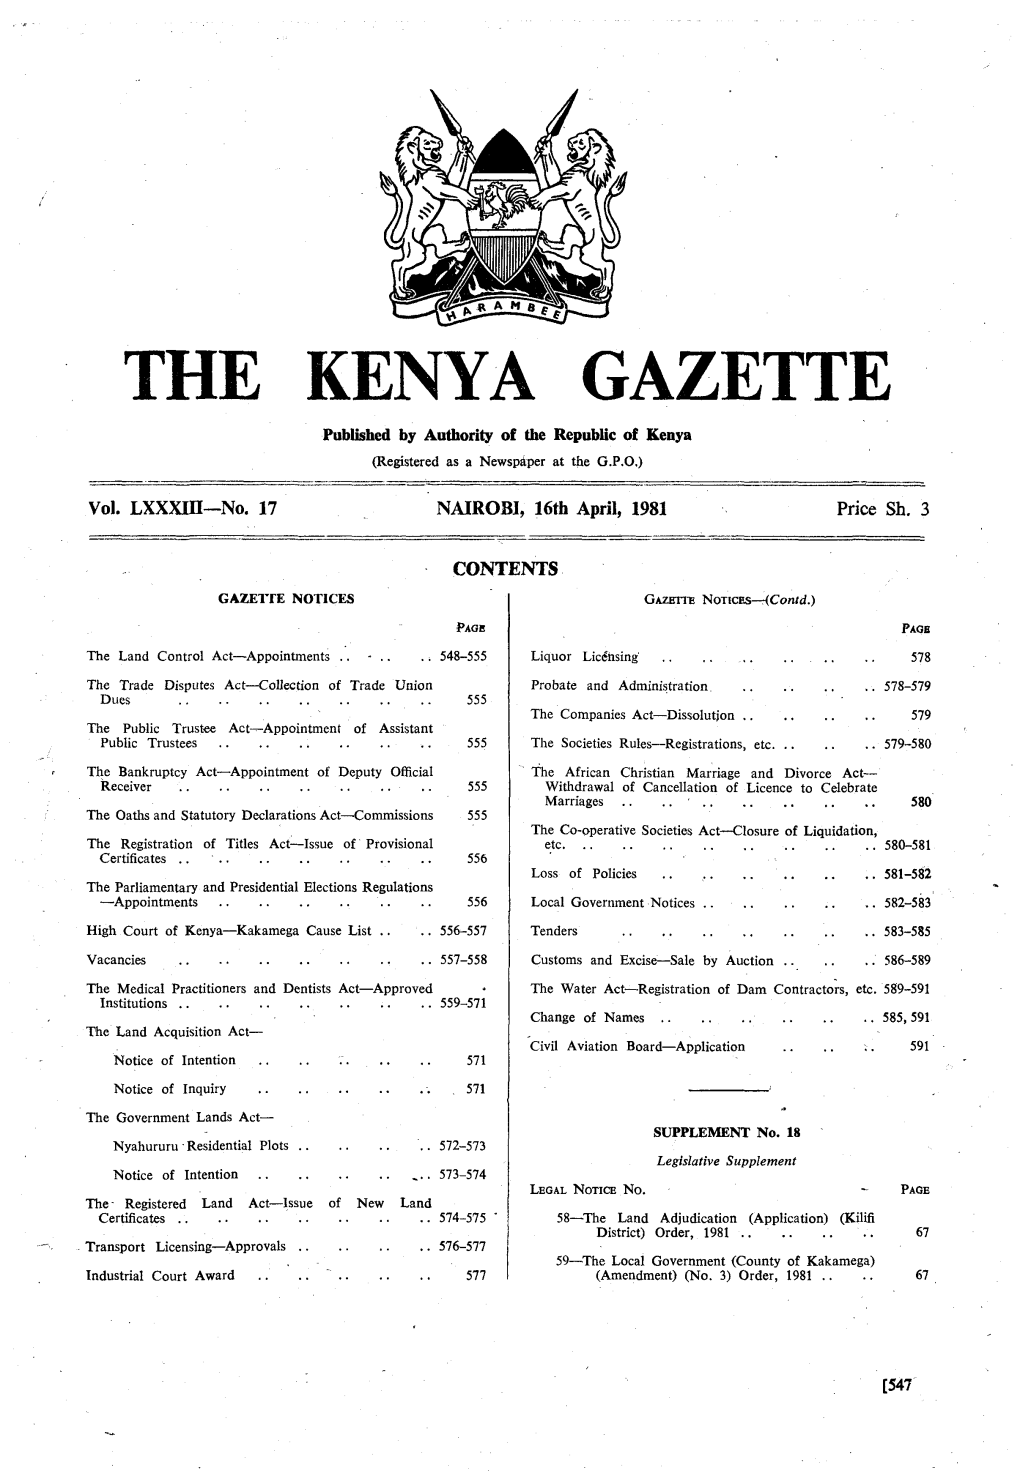 THE KENYA GAZETTE 16Th April, 1981